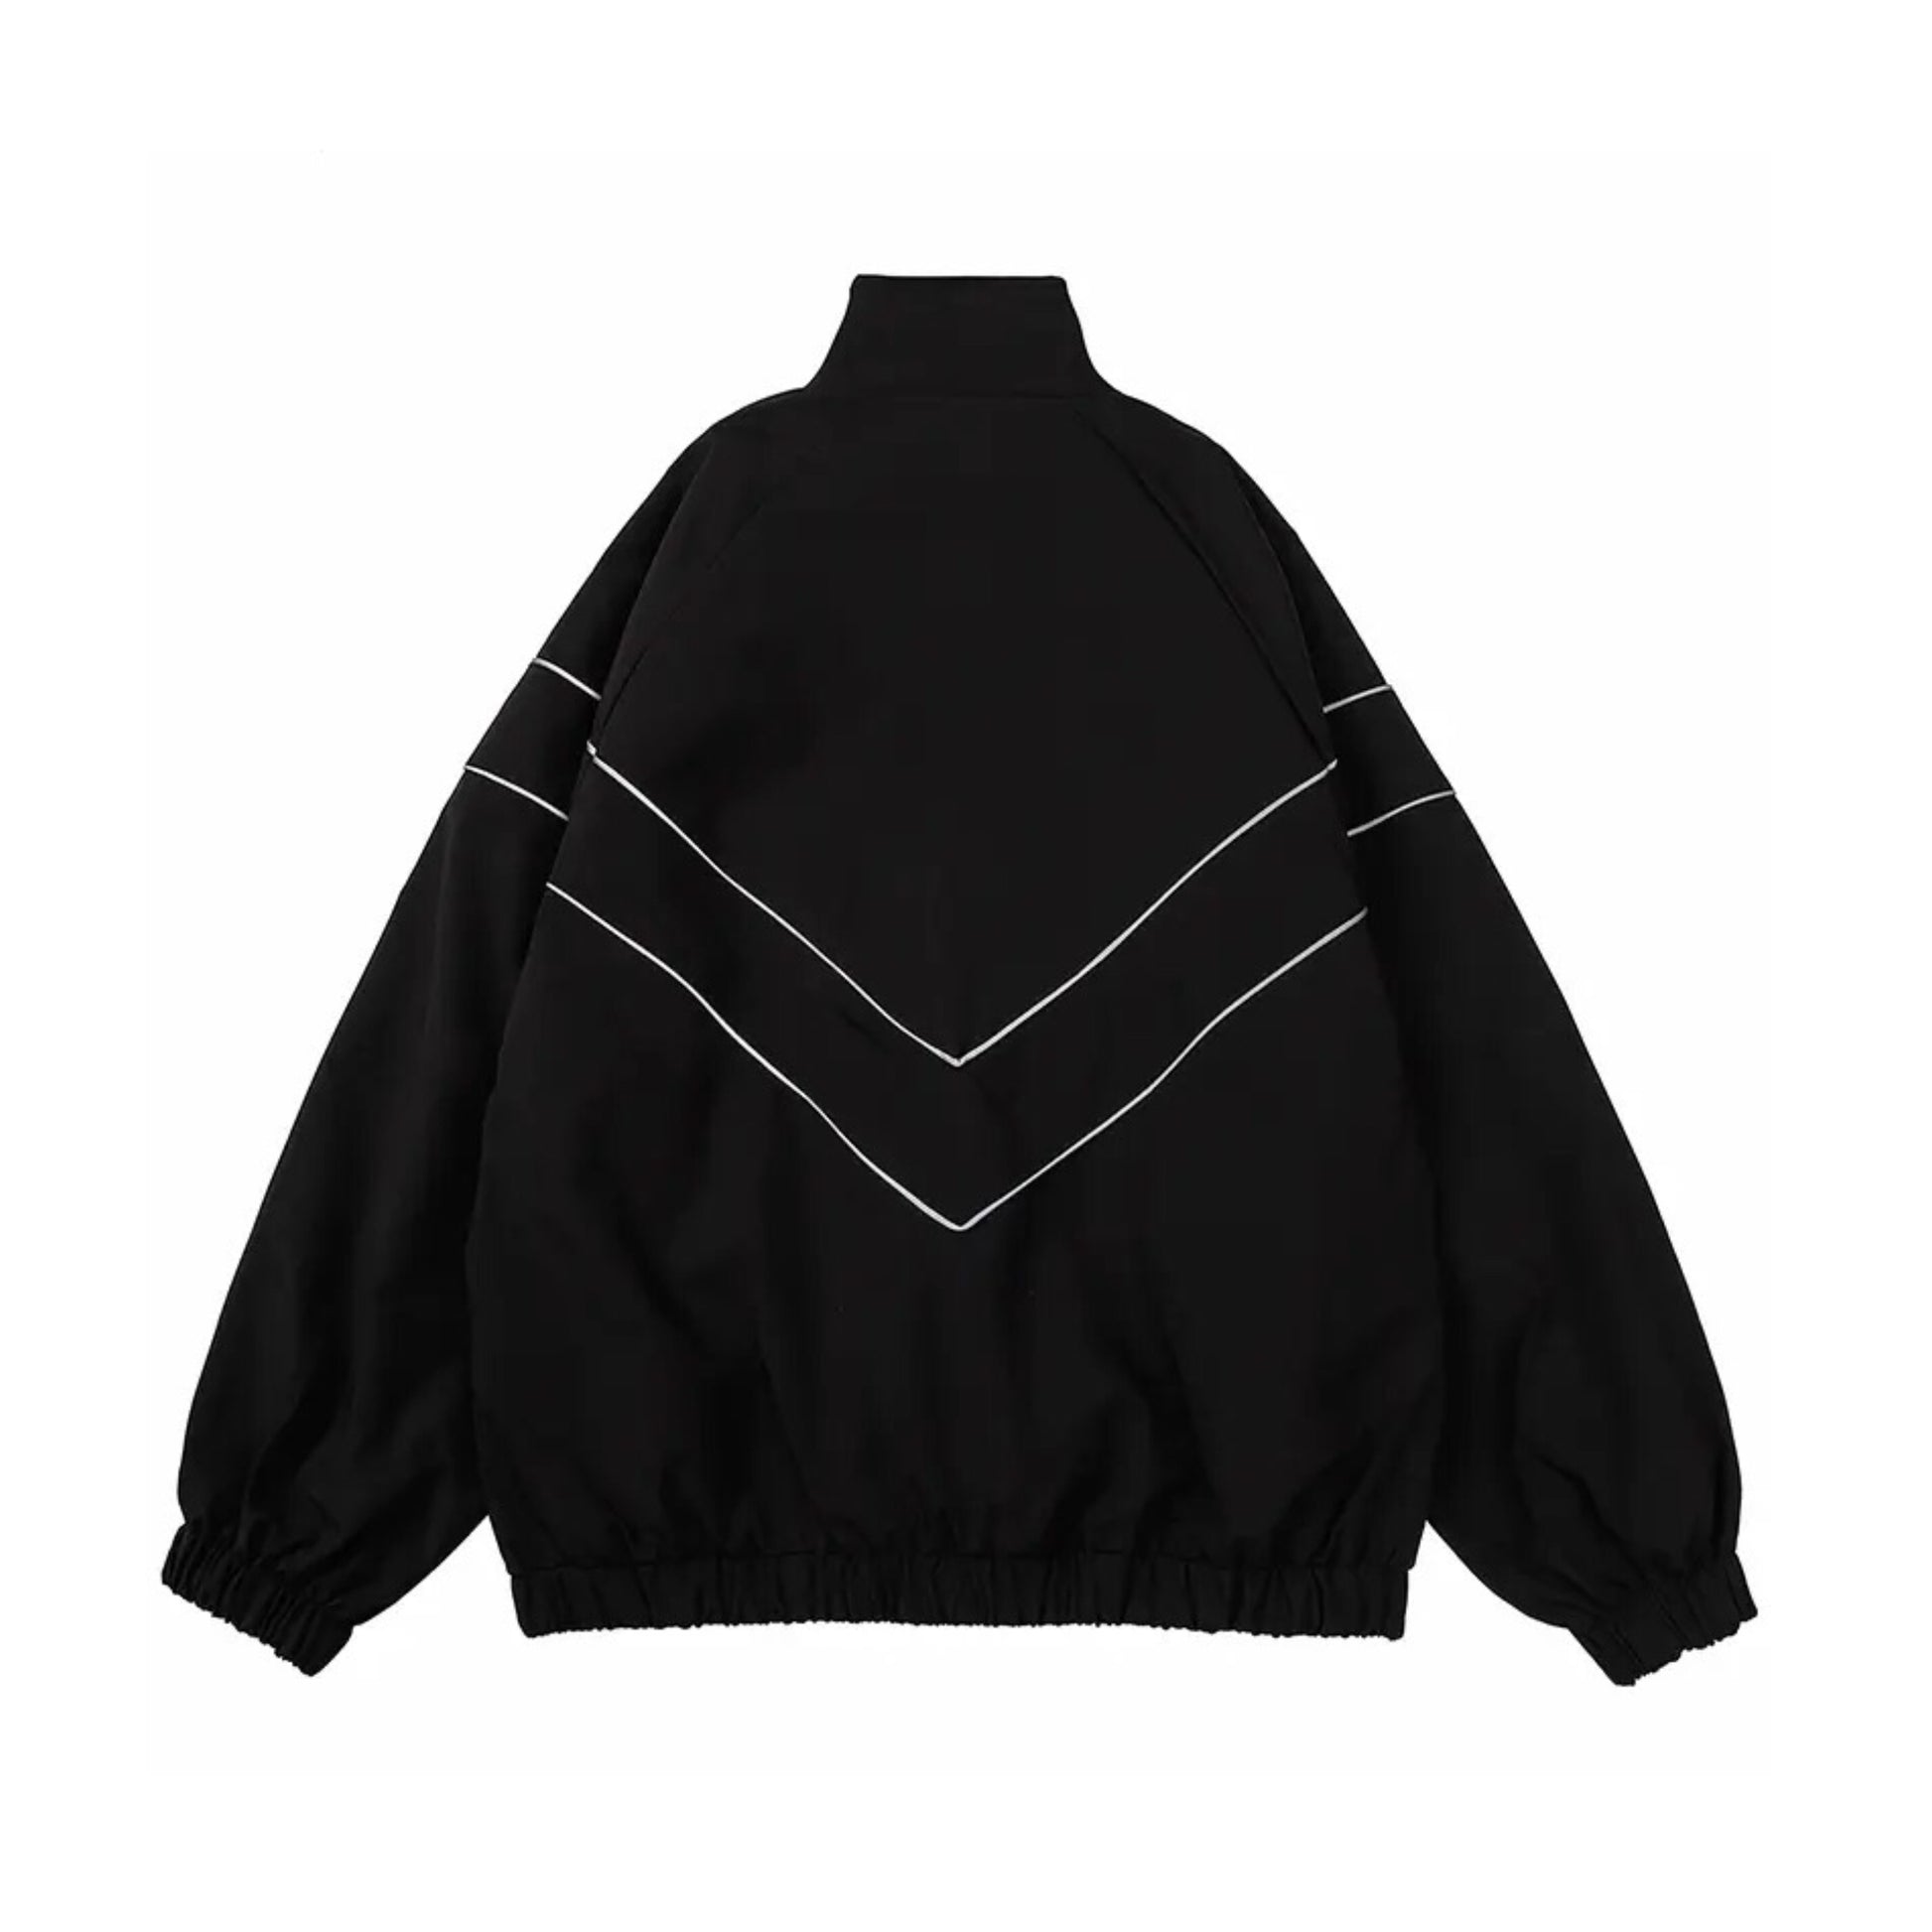 Basic Reflective Striped Jacket | Essential Jacket Coats